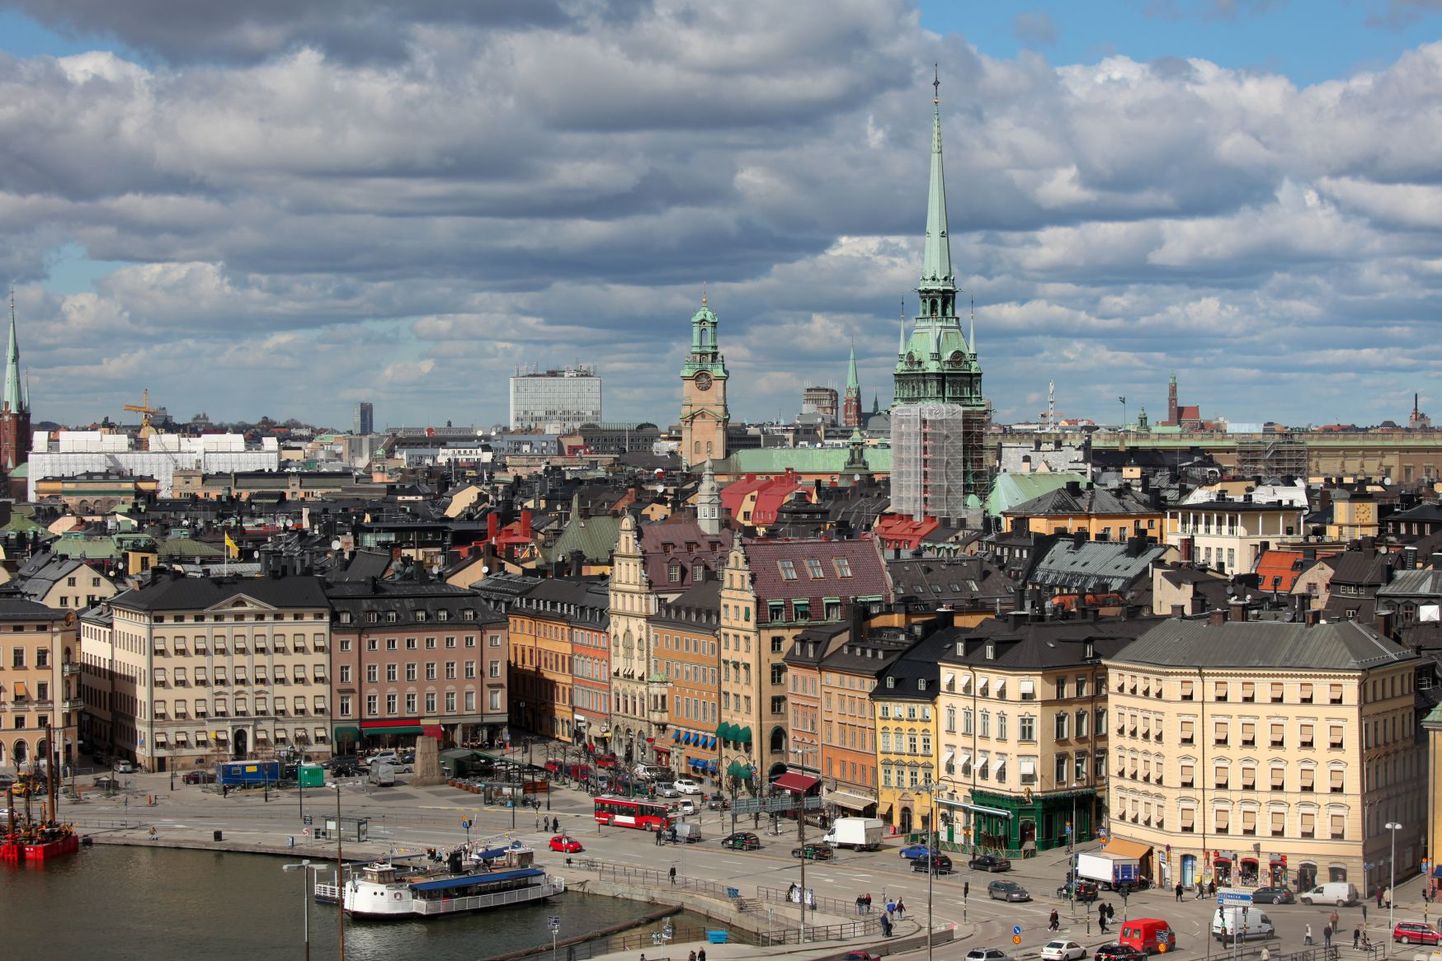 Stockholmi tasub külastada